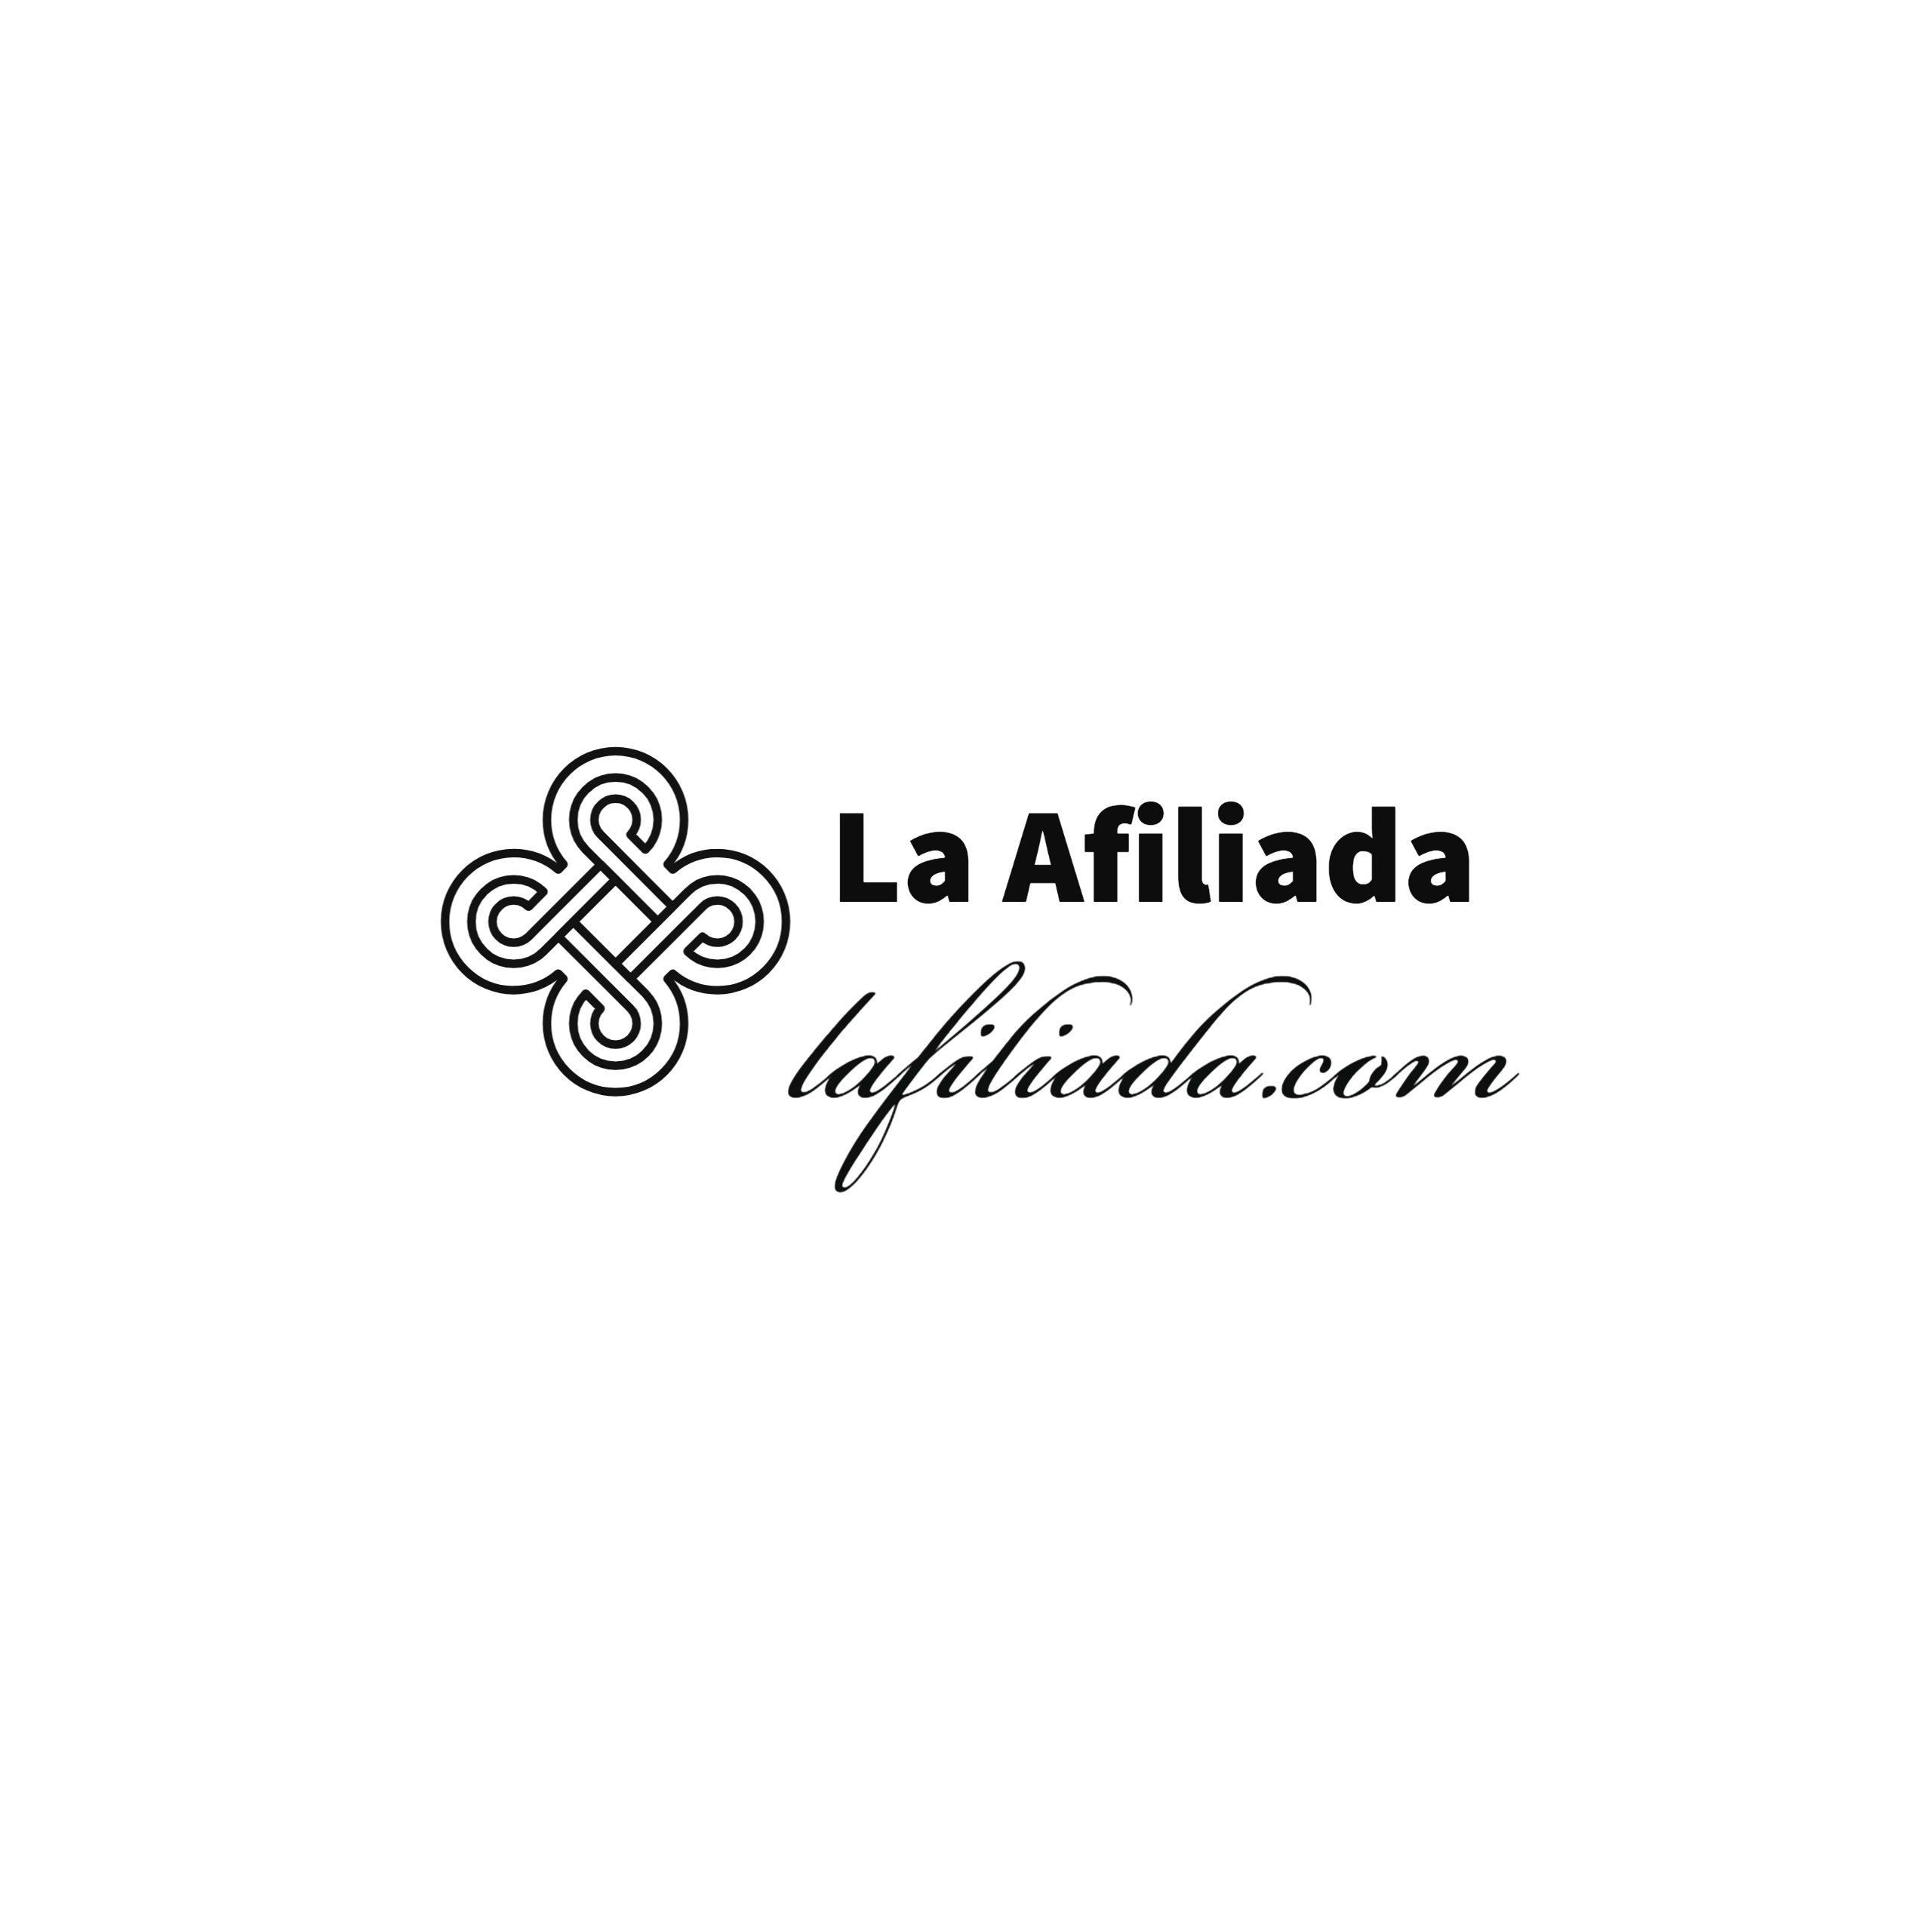 La-Afiliada-logo-horizontal